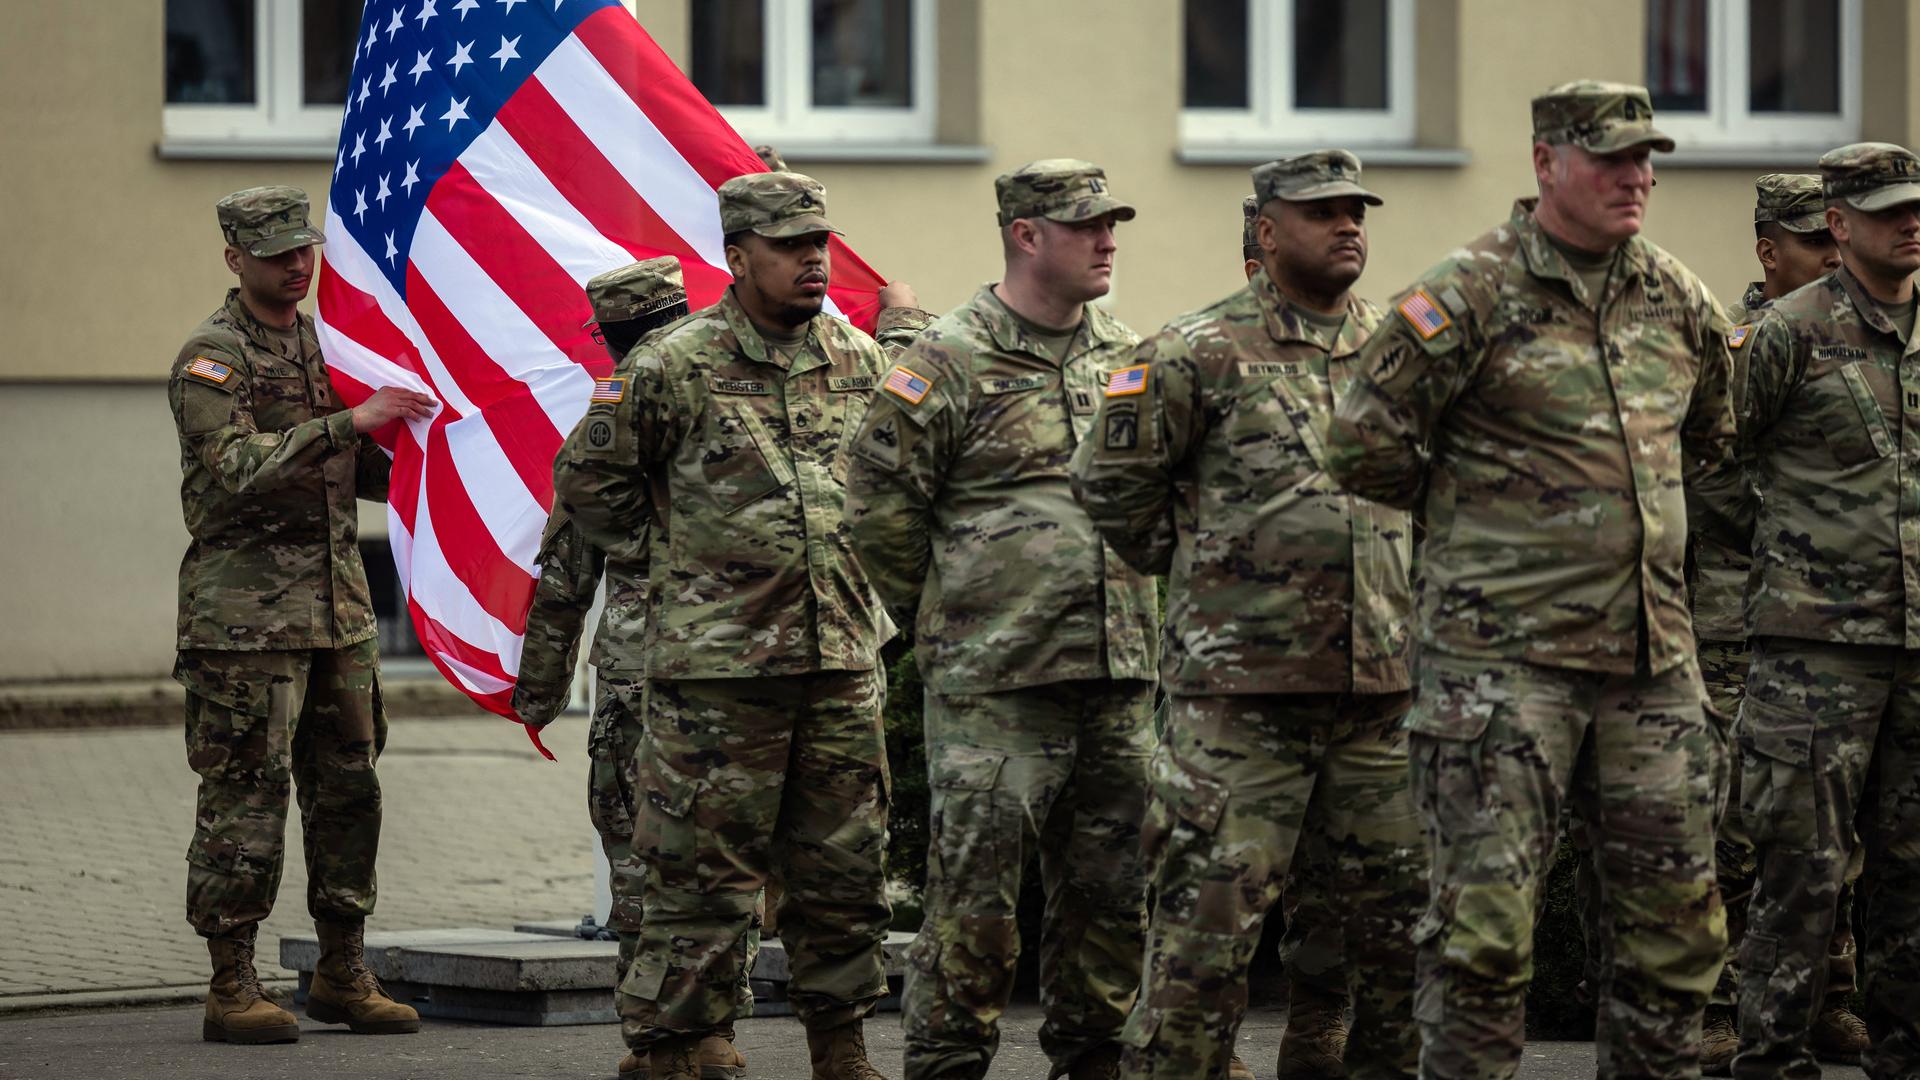 Das Foto zeigt US-Soldaten vor einer Fahne der USA. Im Hintergrund ist ein Haus zu sehen.